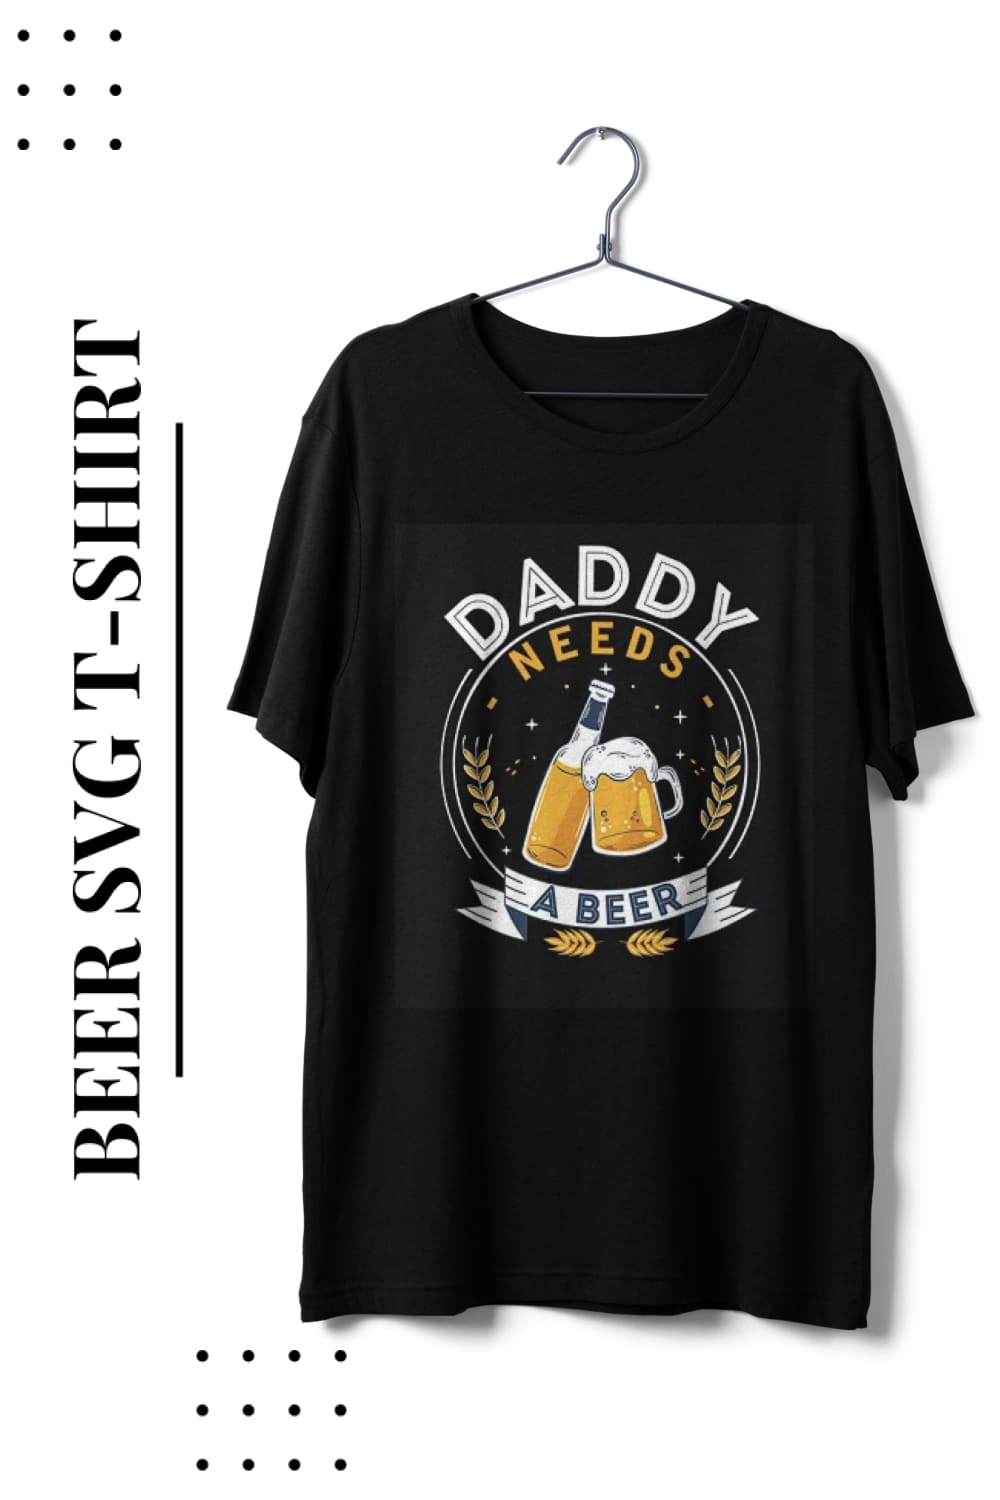 Beer SVG T-Shirt Bundle Design - Pinterest.